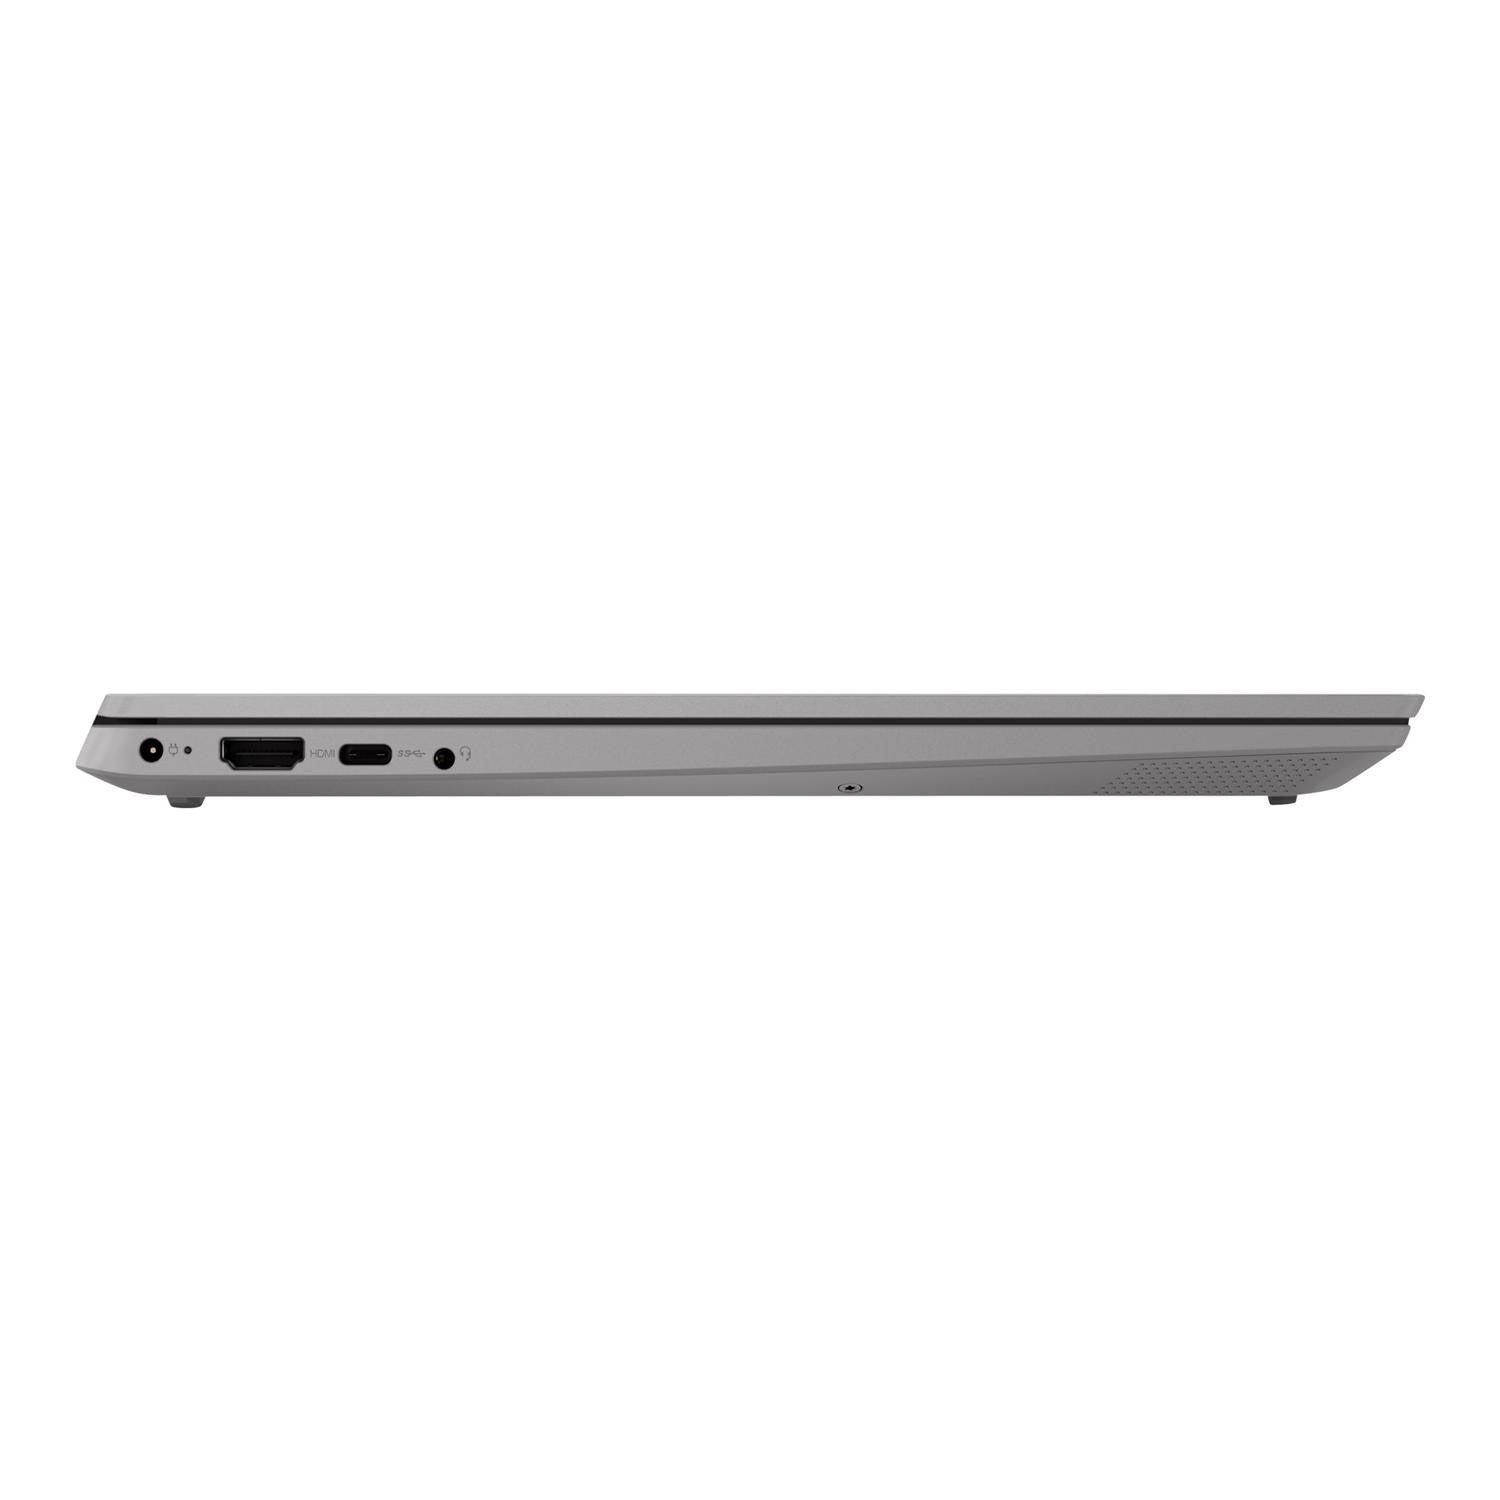 Lenovo IdeaPad S340-15IIL Laptop, Intel Core i5 Processor, 8GB RAM, 256GB SSD, 15.6" Full HD - Platinum Grey